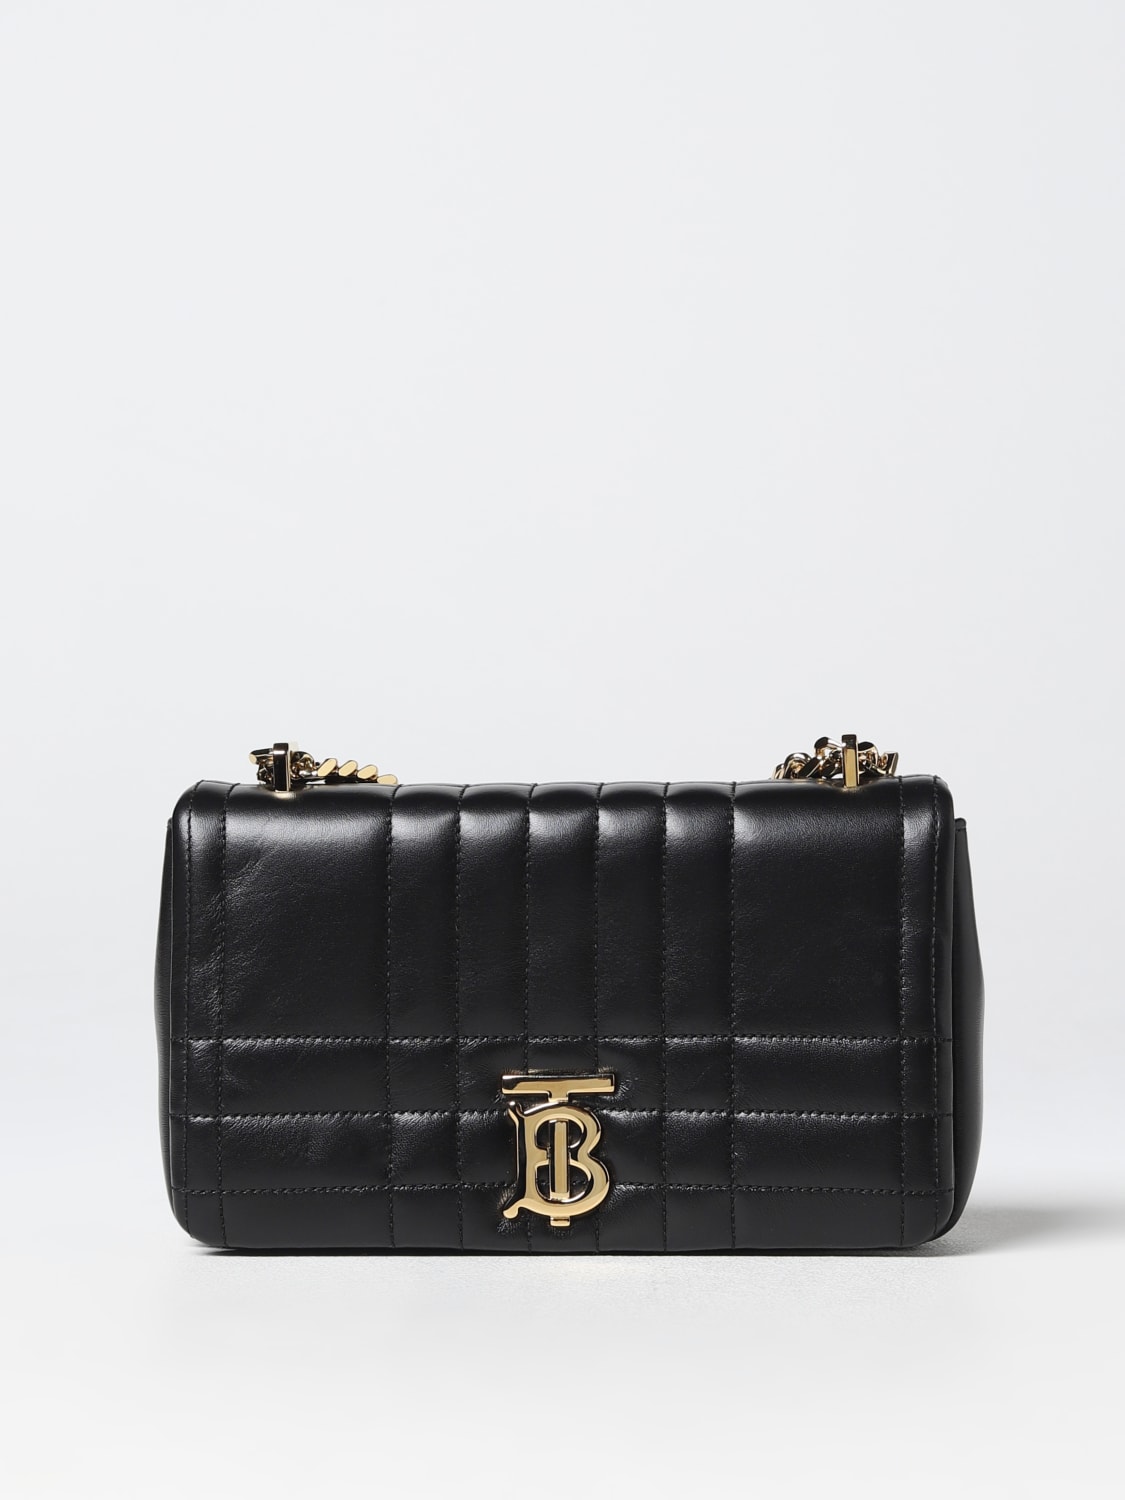 Lola Leather Shoulder Bag in Black - Burberry